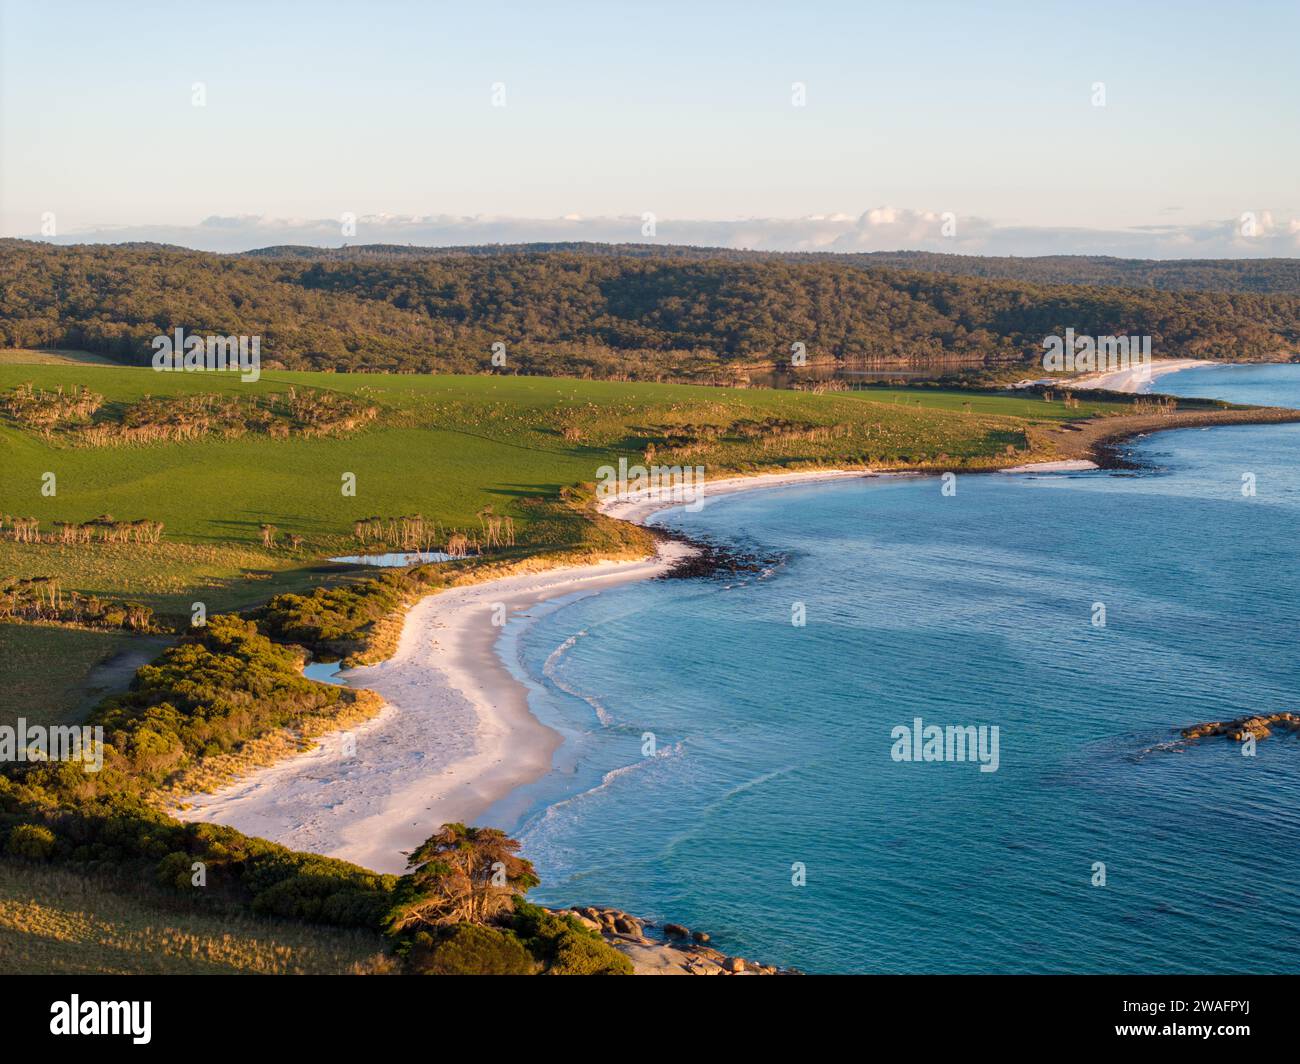 Ein Luftbild von einem atemberaubenden Strand mit kristallblauem Meer und grünen Hügeln Stockfoto